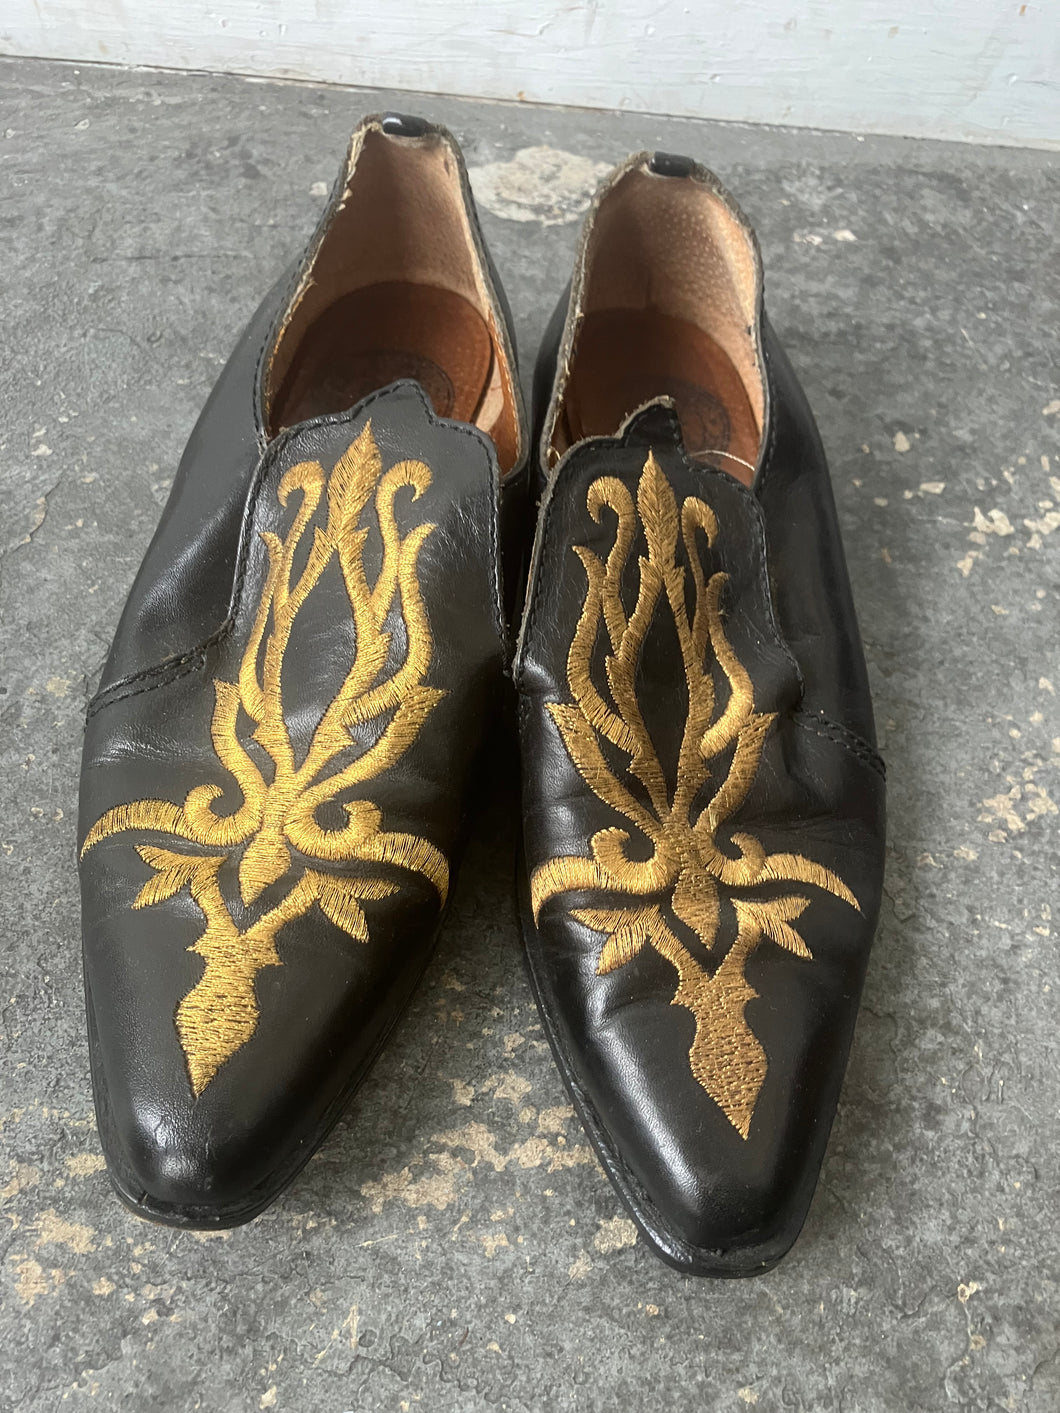 Vintage El Vaquero Black Shoes with Gold Embroidery